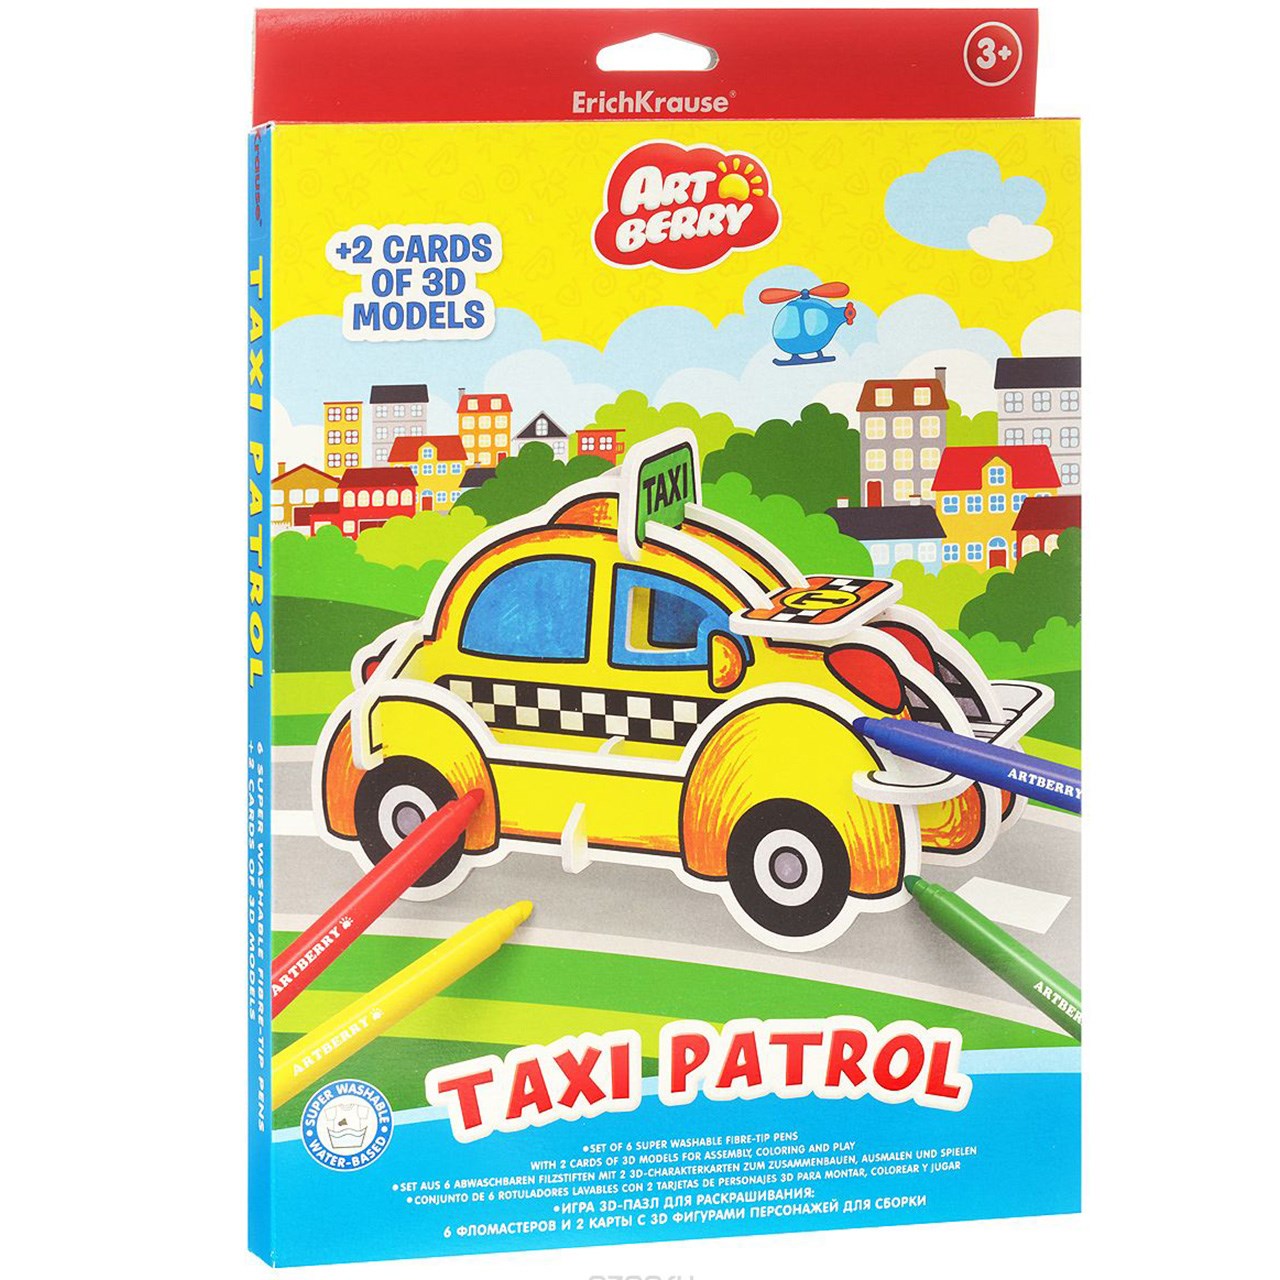 بسته مدل سازی اریک کراوزه مدل Taxi Patrol